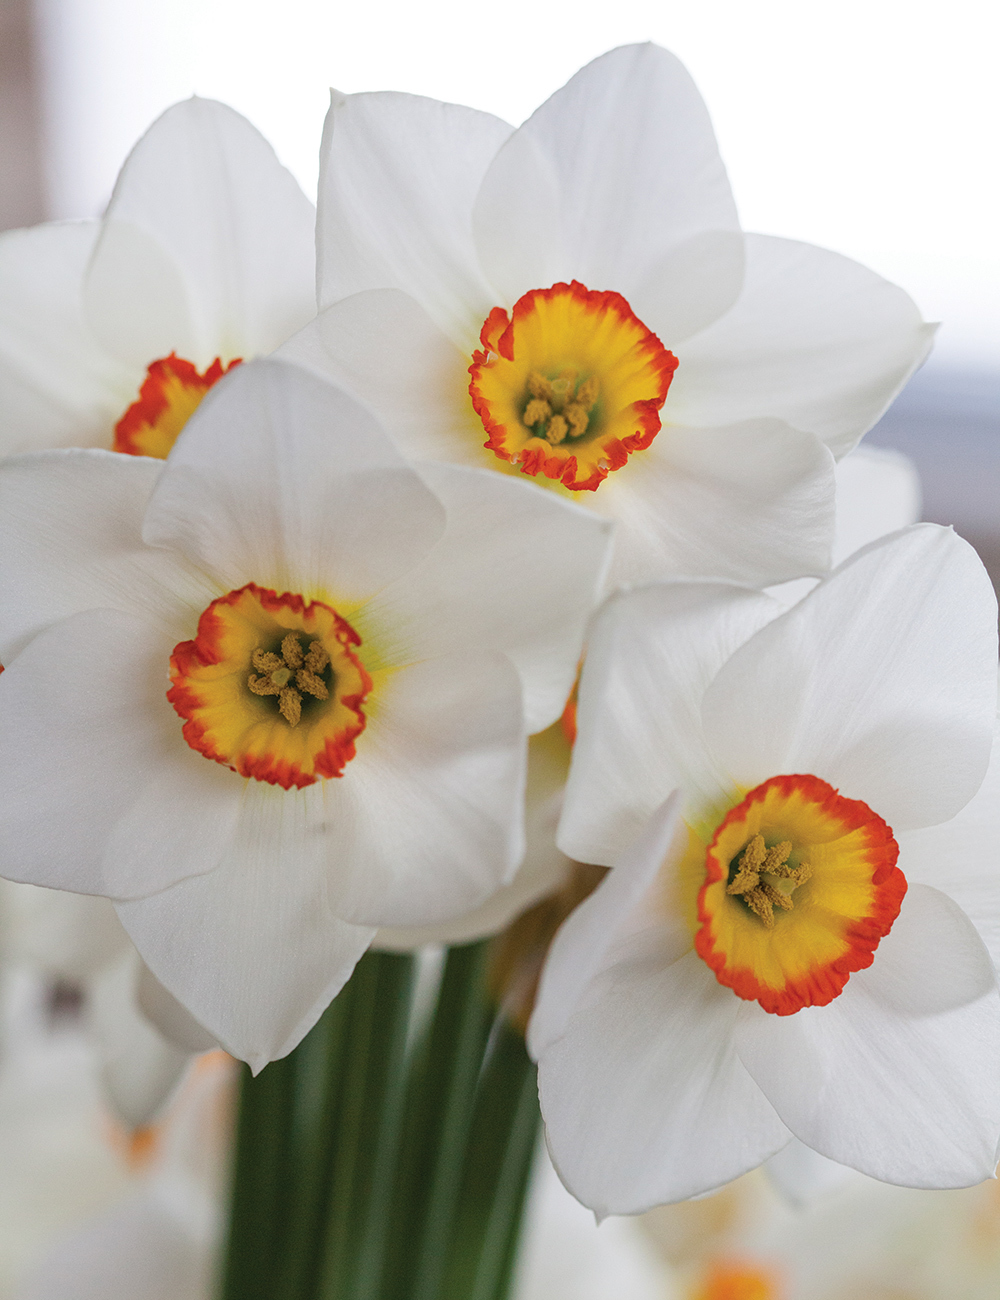 Pheasant's Eye Daffodil 'Poetry in Motion'